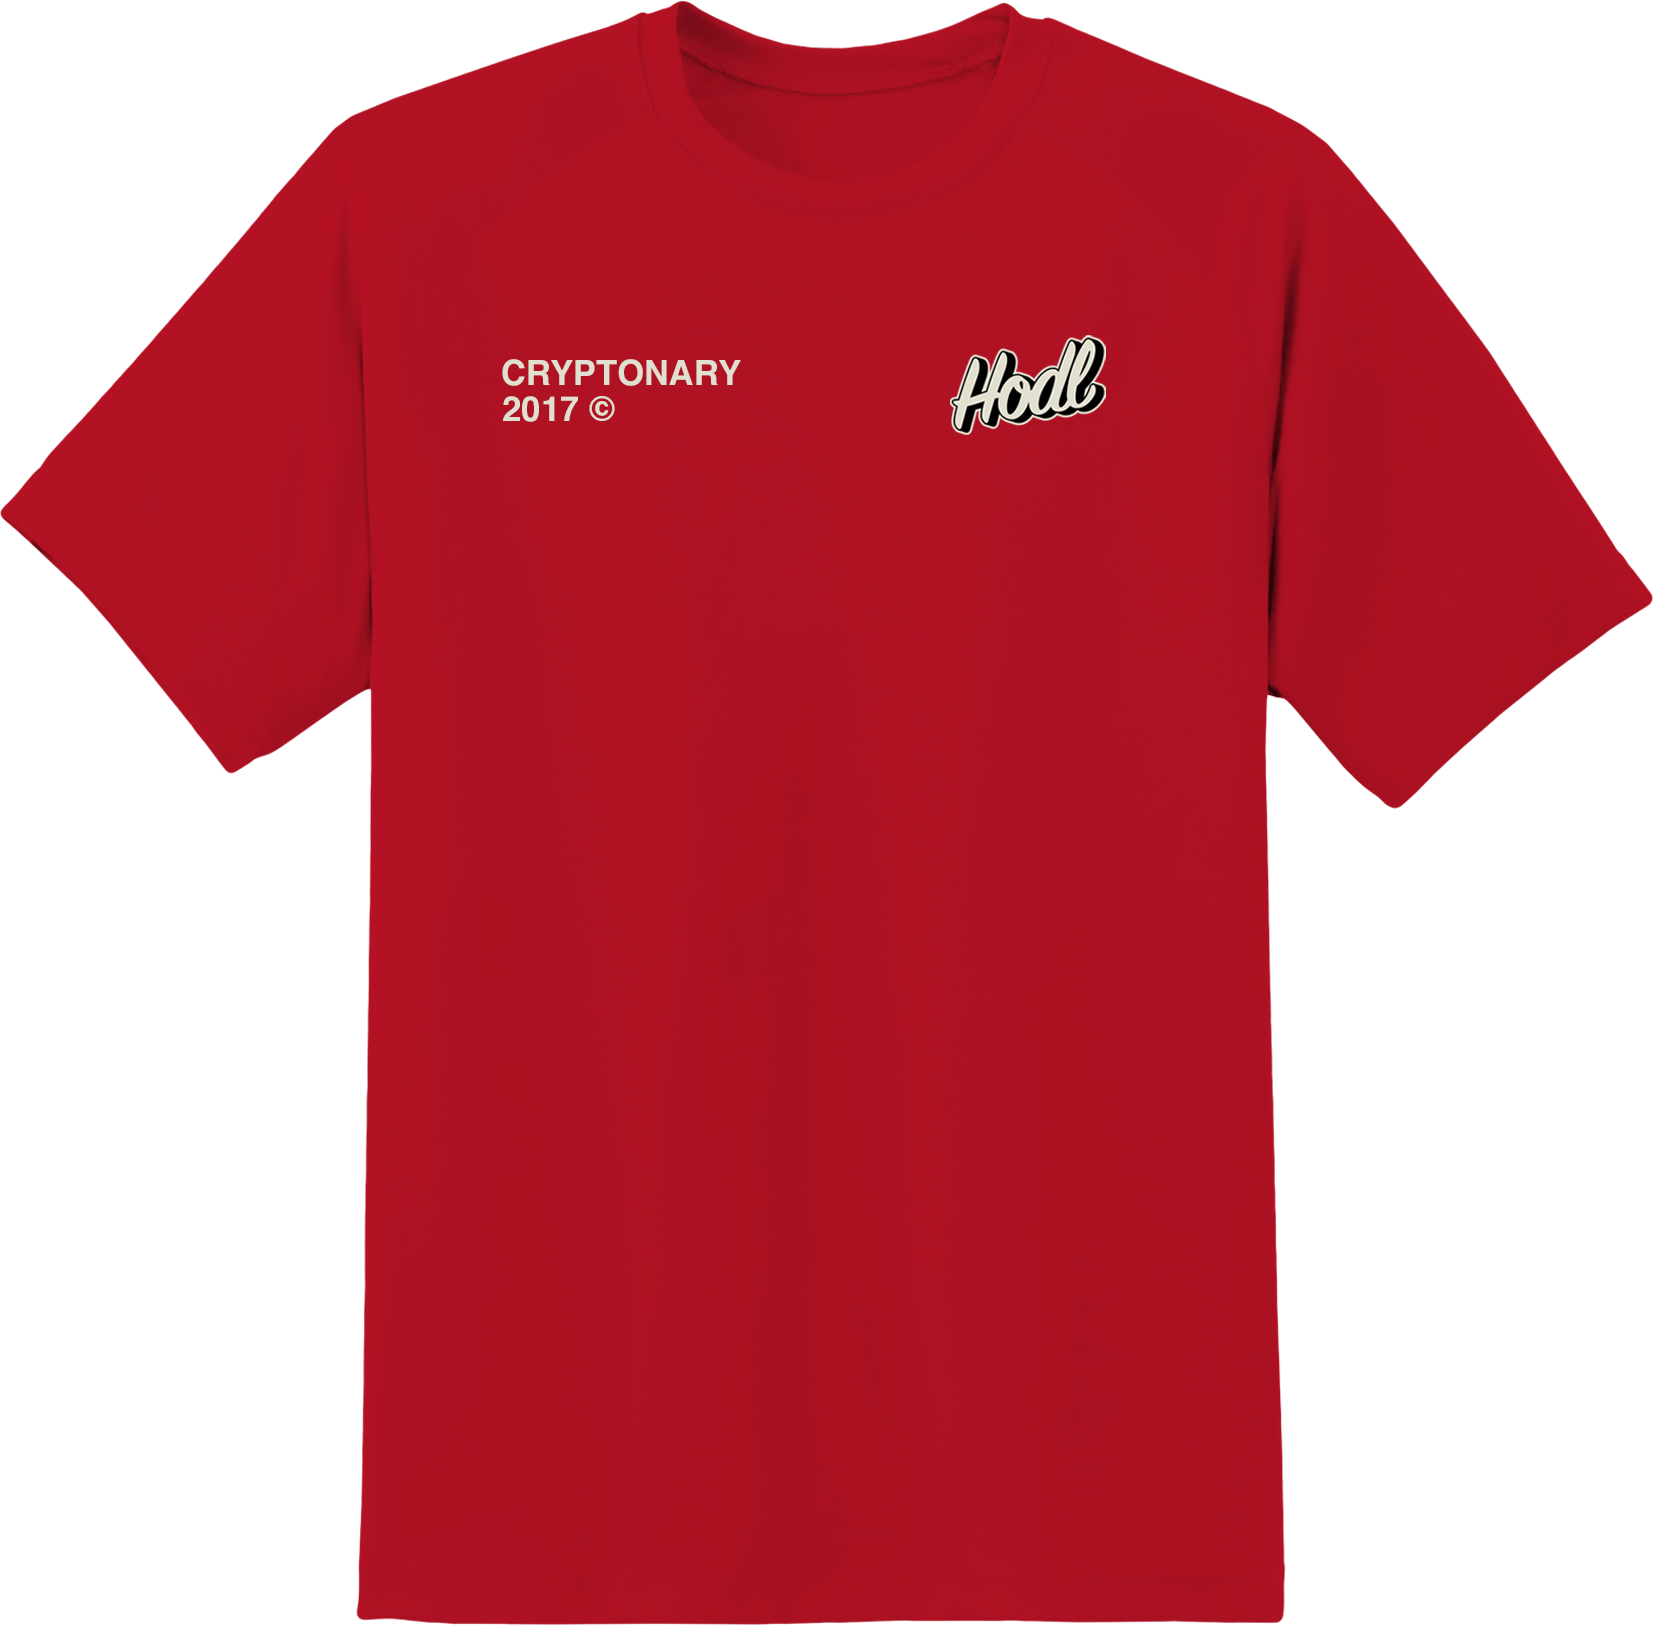 'HODL' T-Shirt